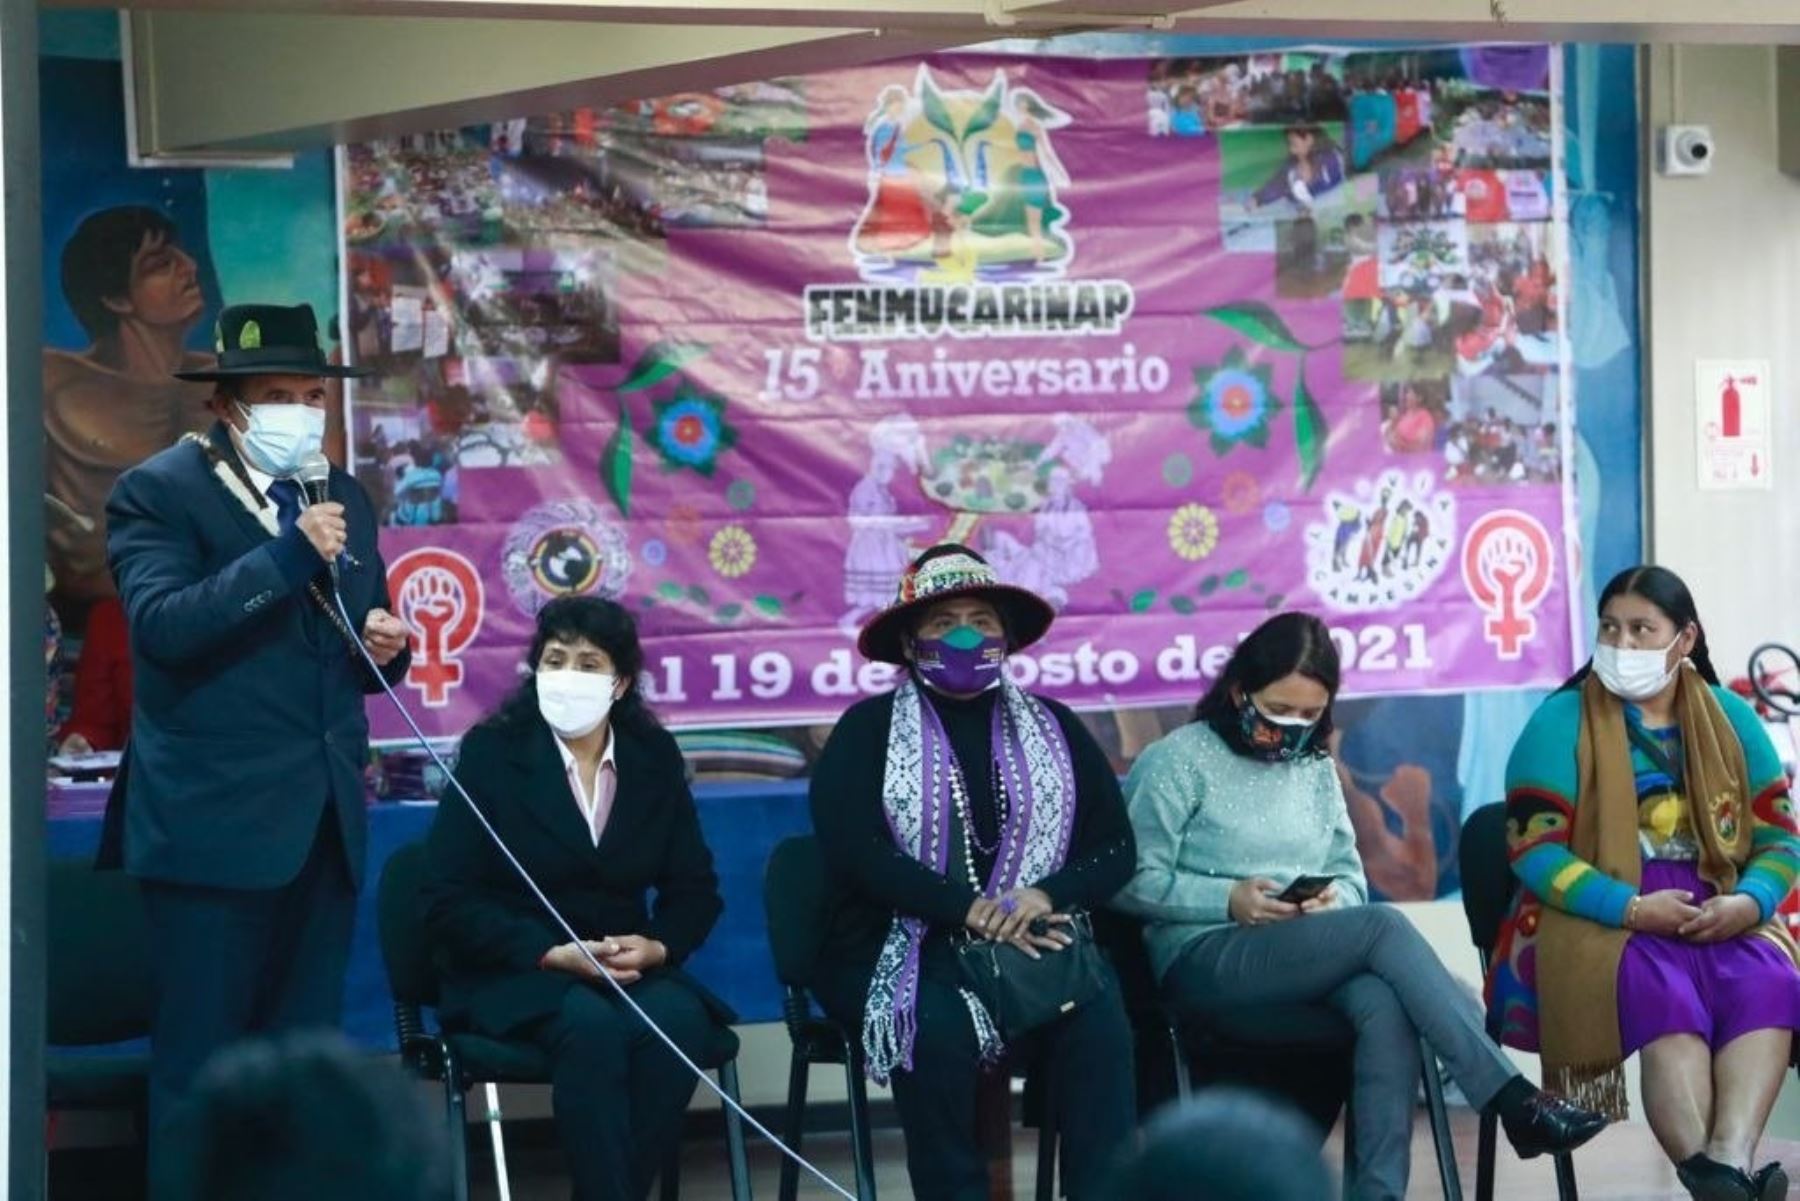 El ministro de Cultura, Ciro Gálvez, dirige mensaje por el aniversario de la Fenmucarinap. En la actividad participaron también la Primera Dama de la Nación, Lilia Paredes, y la ministra de la Mujer y Poblaciones Vulnerables, Anahí Durand.